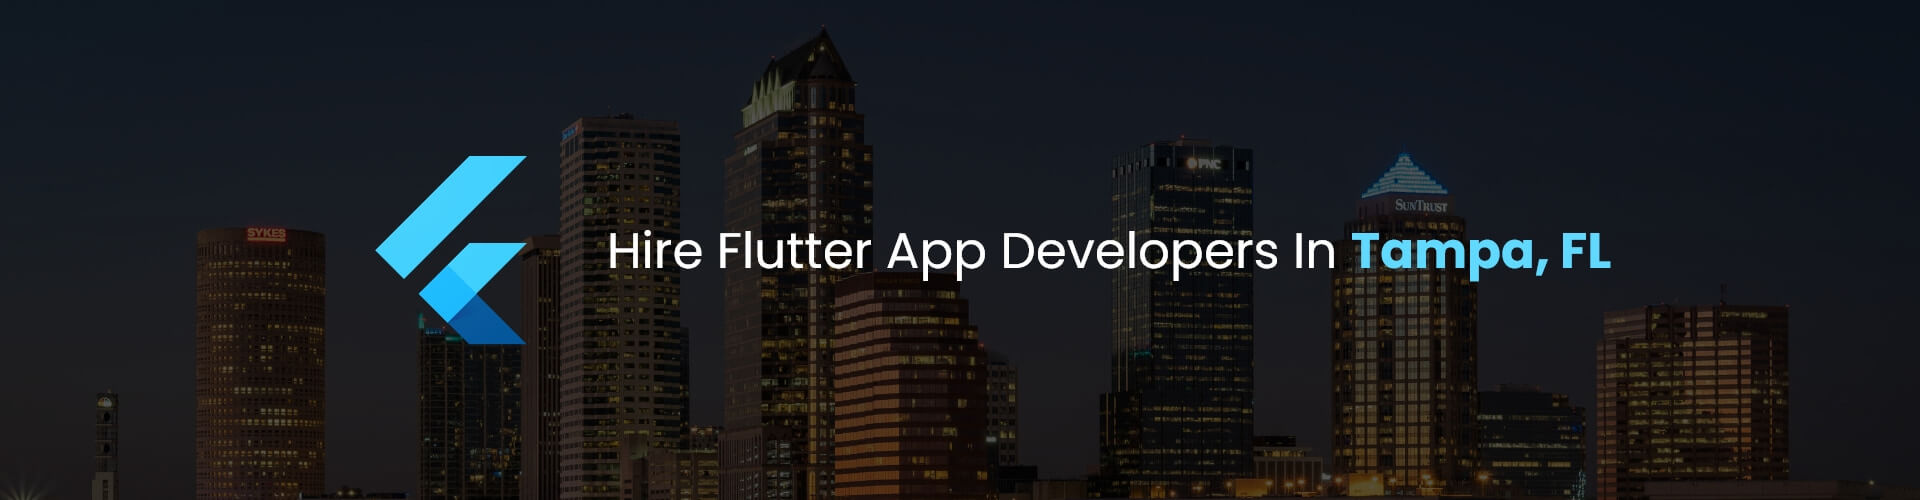 flutter app developers in tampa